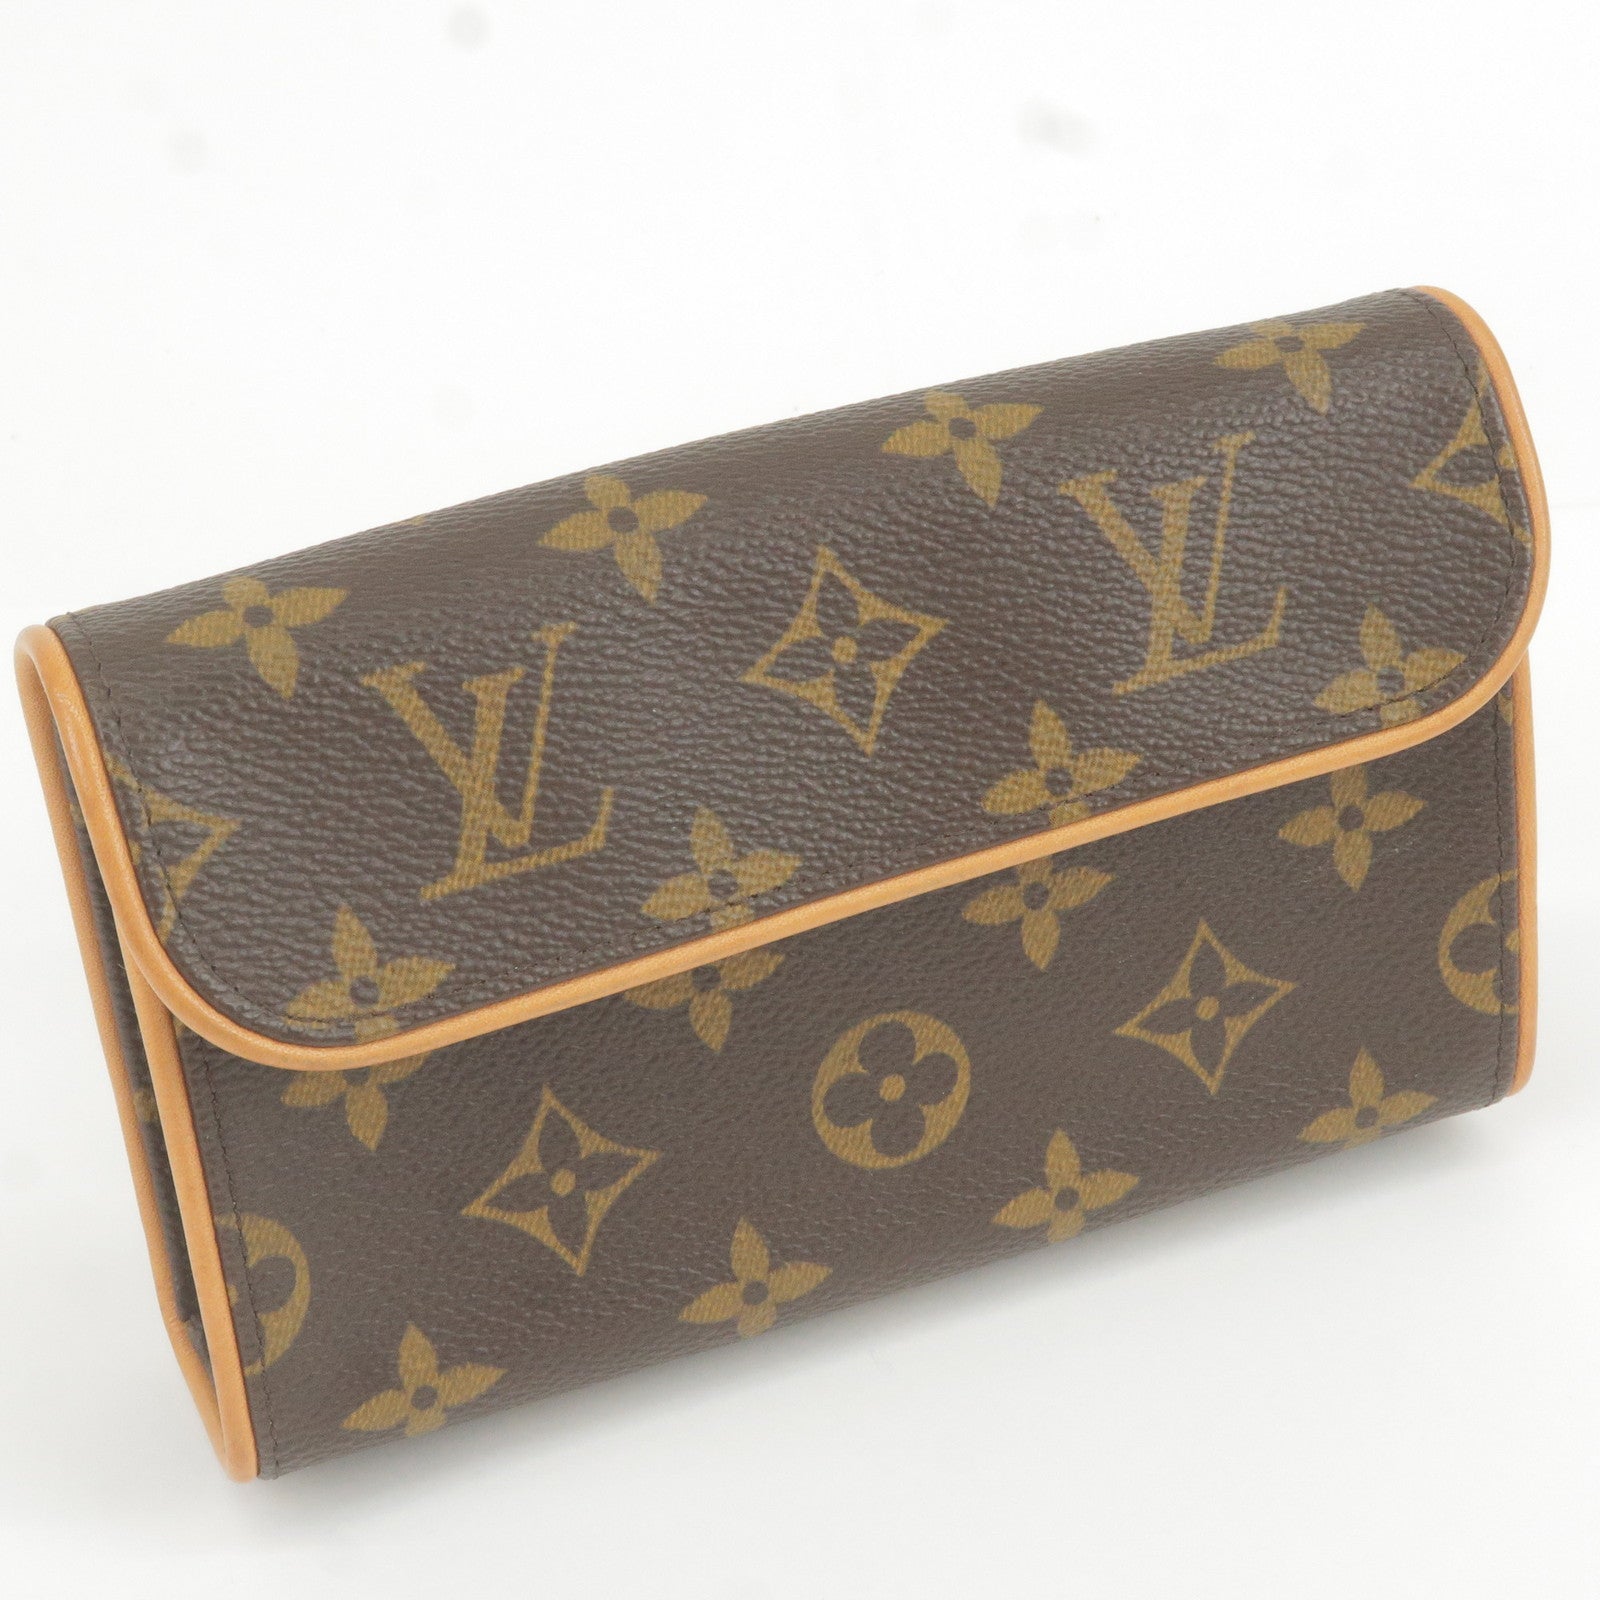 Pre-Owned Louis Vuitton Belt Bag Pochette Florantine Monogram